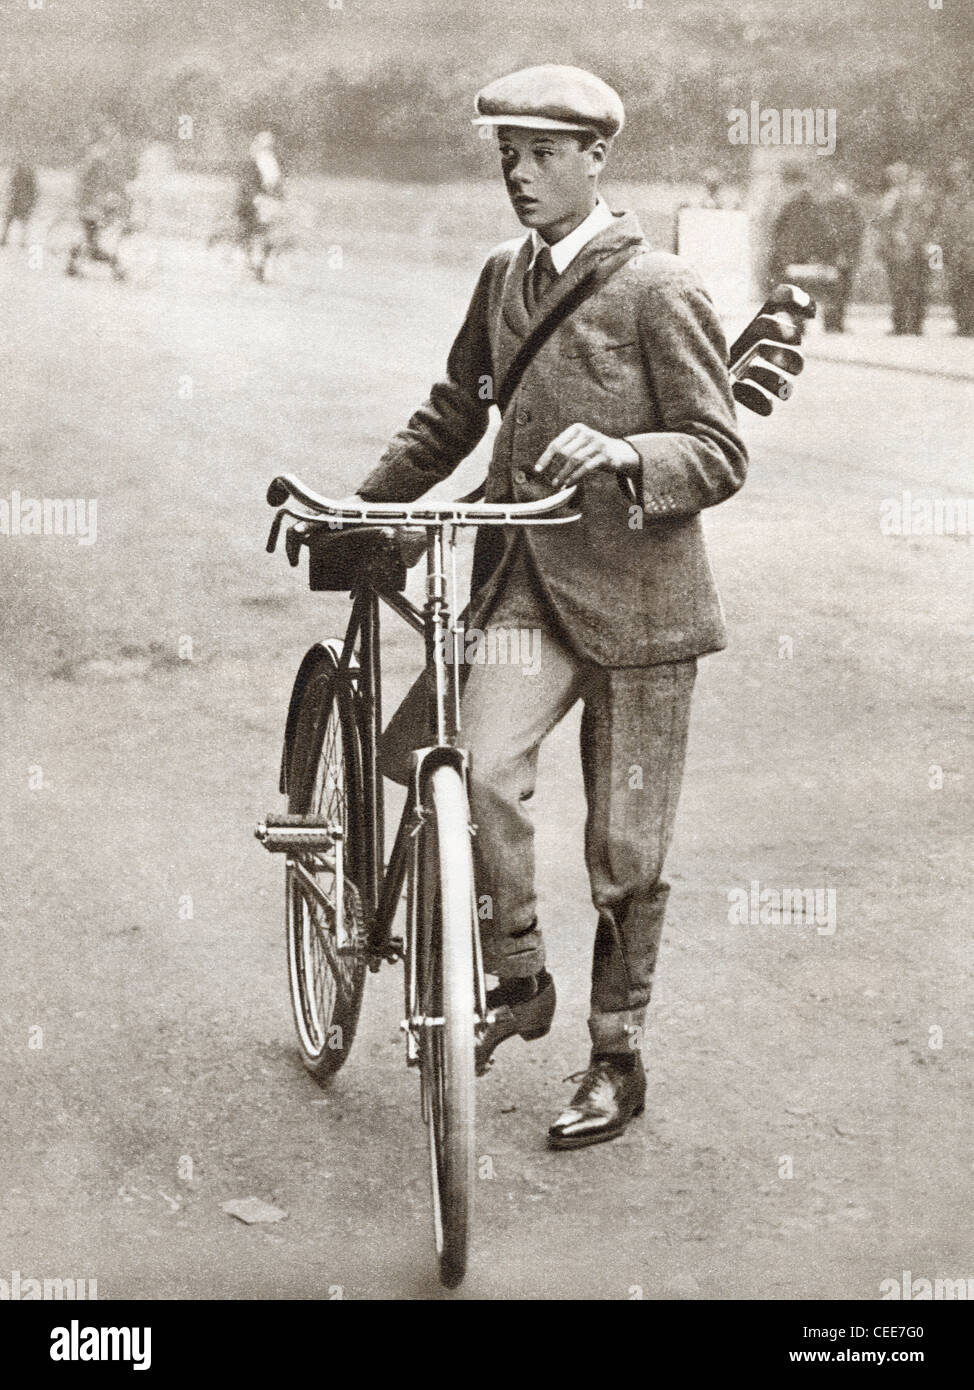 Le Prince de Galles, futur Édouard VIII, vu ici en 1912. Banque D'Images